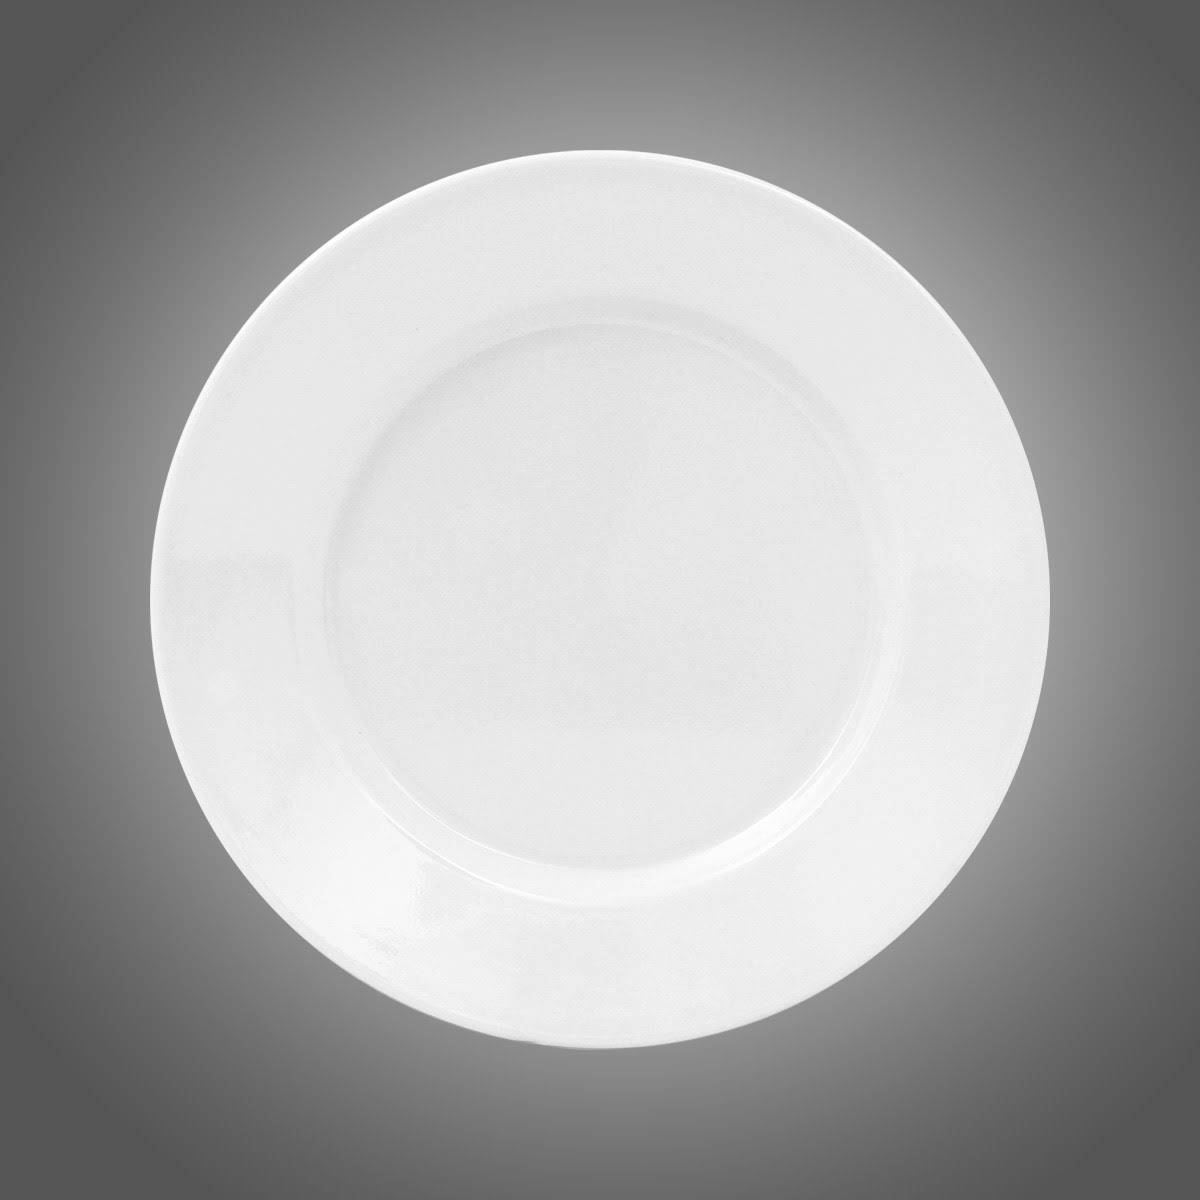 21 cam çapında melaminden üretilmiş beyaz ve desenli servis tabağı